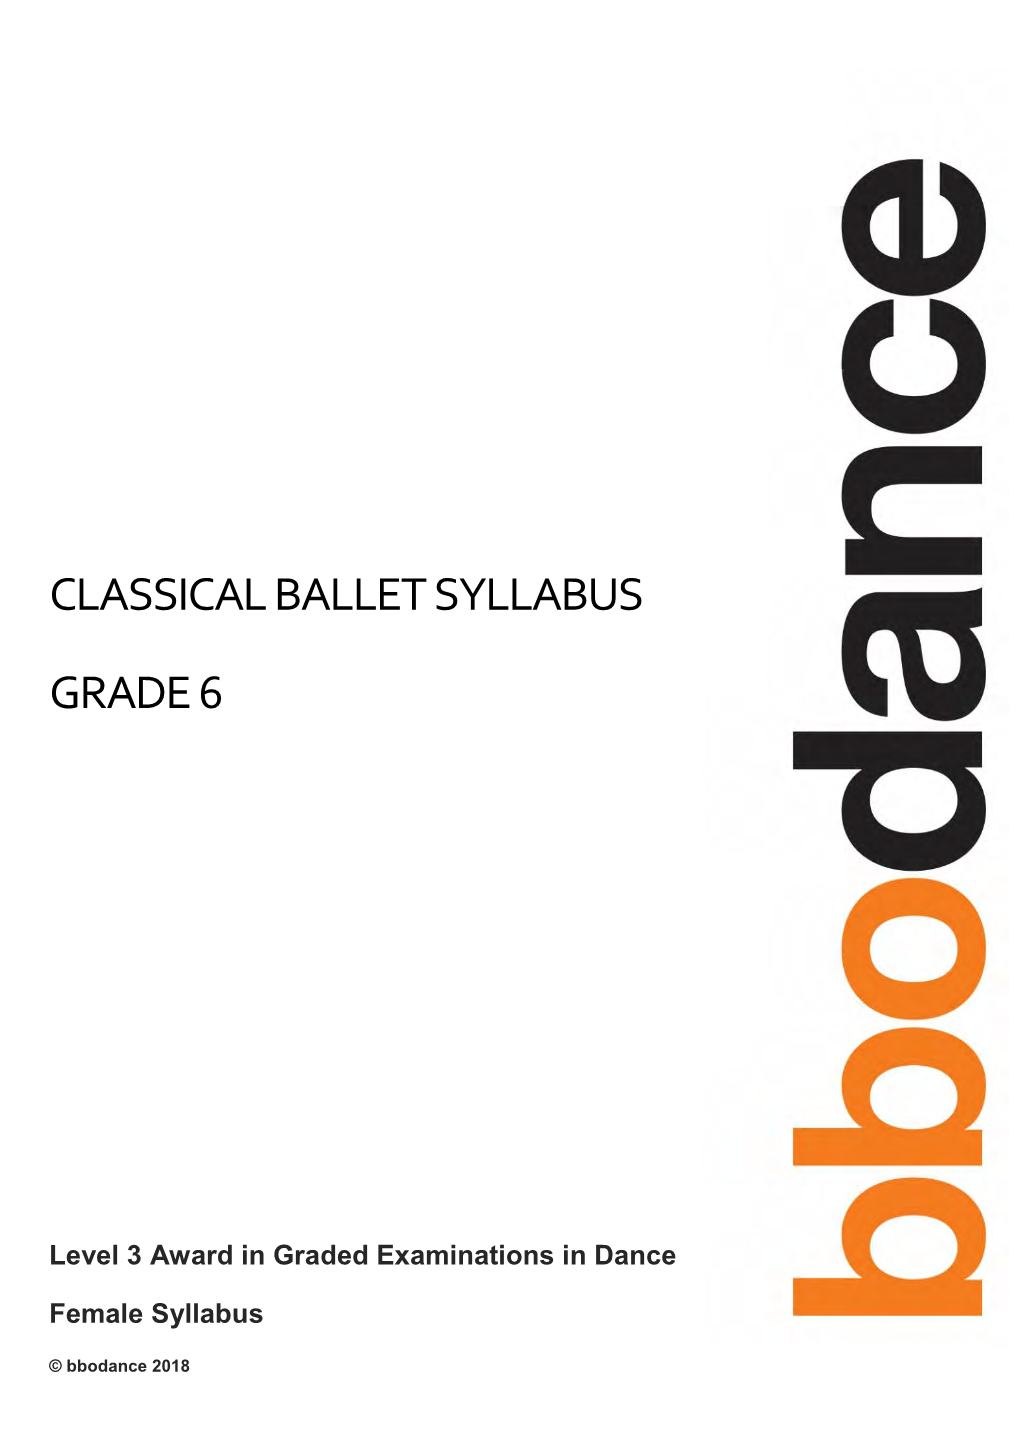 Classical Ballet Syllabus Grade 6